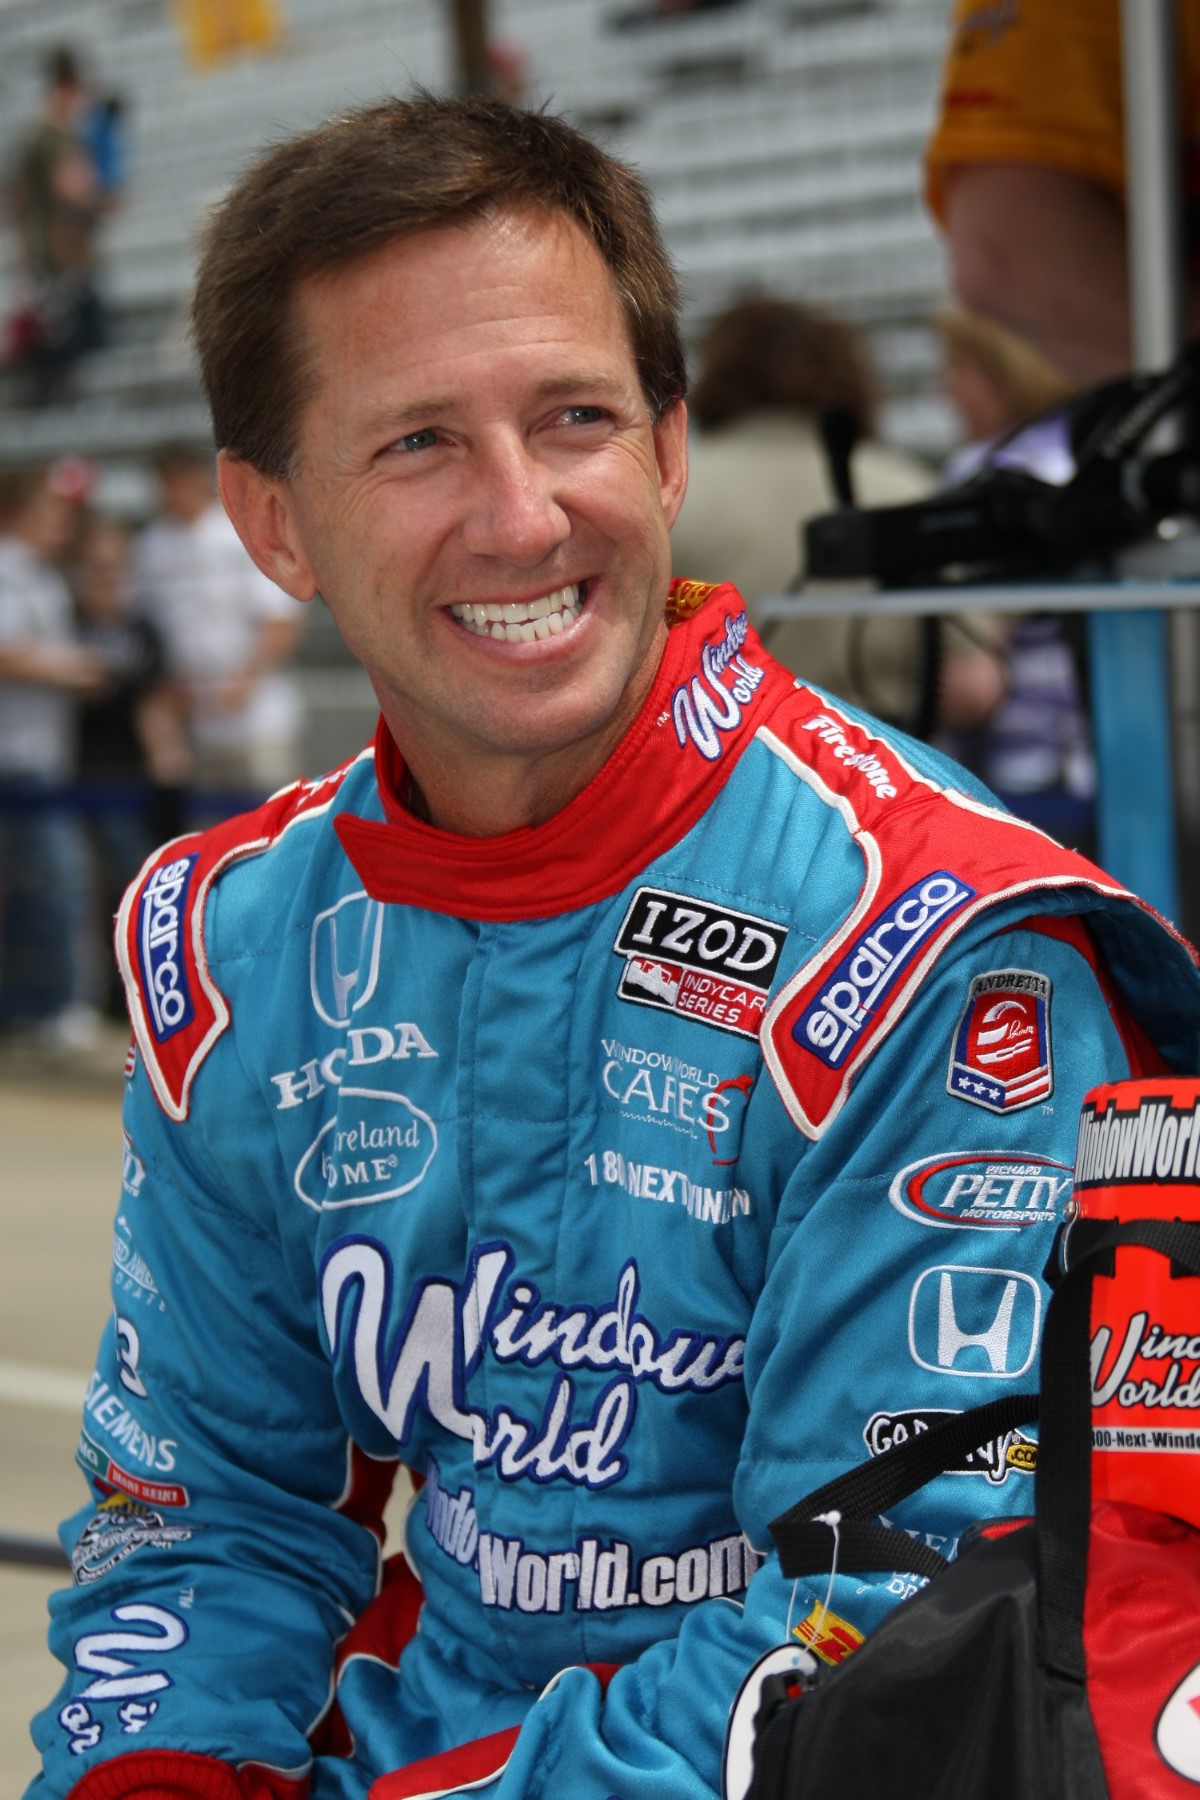 John's last Indy 500 in 2011